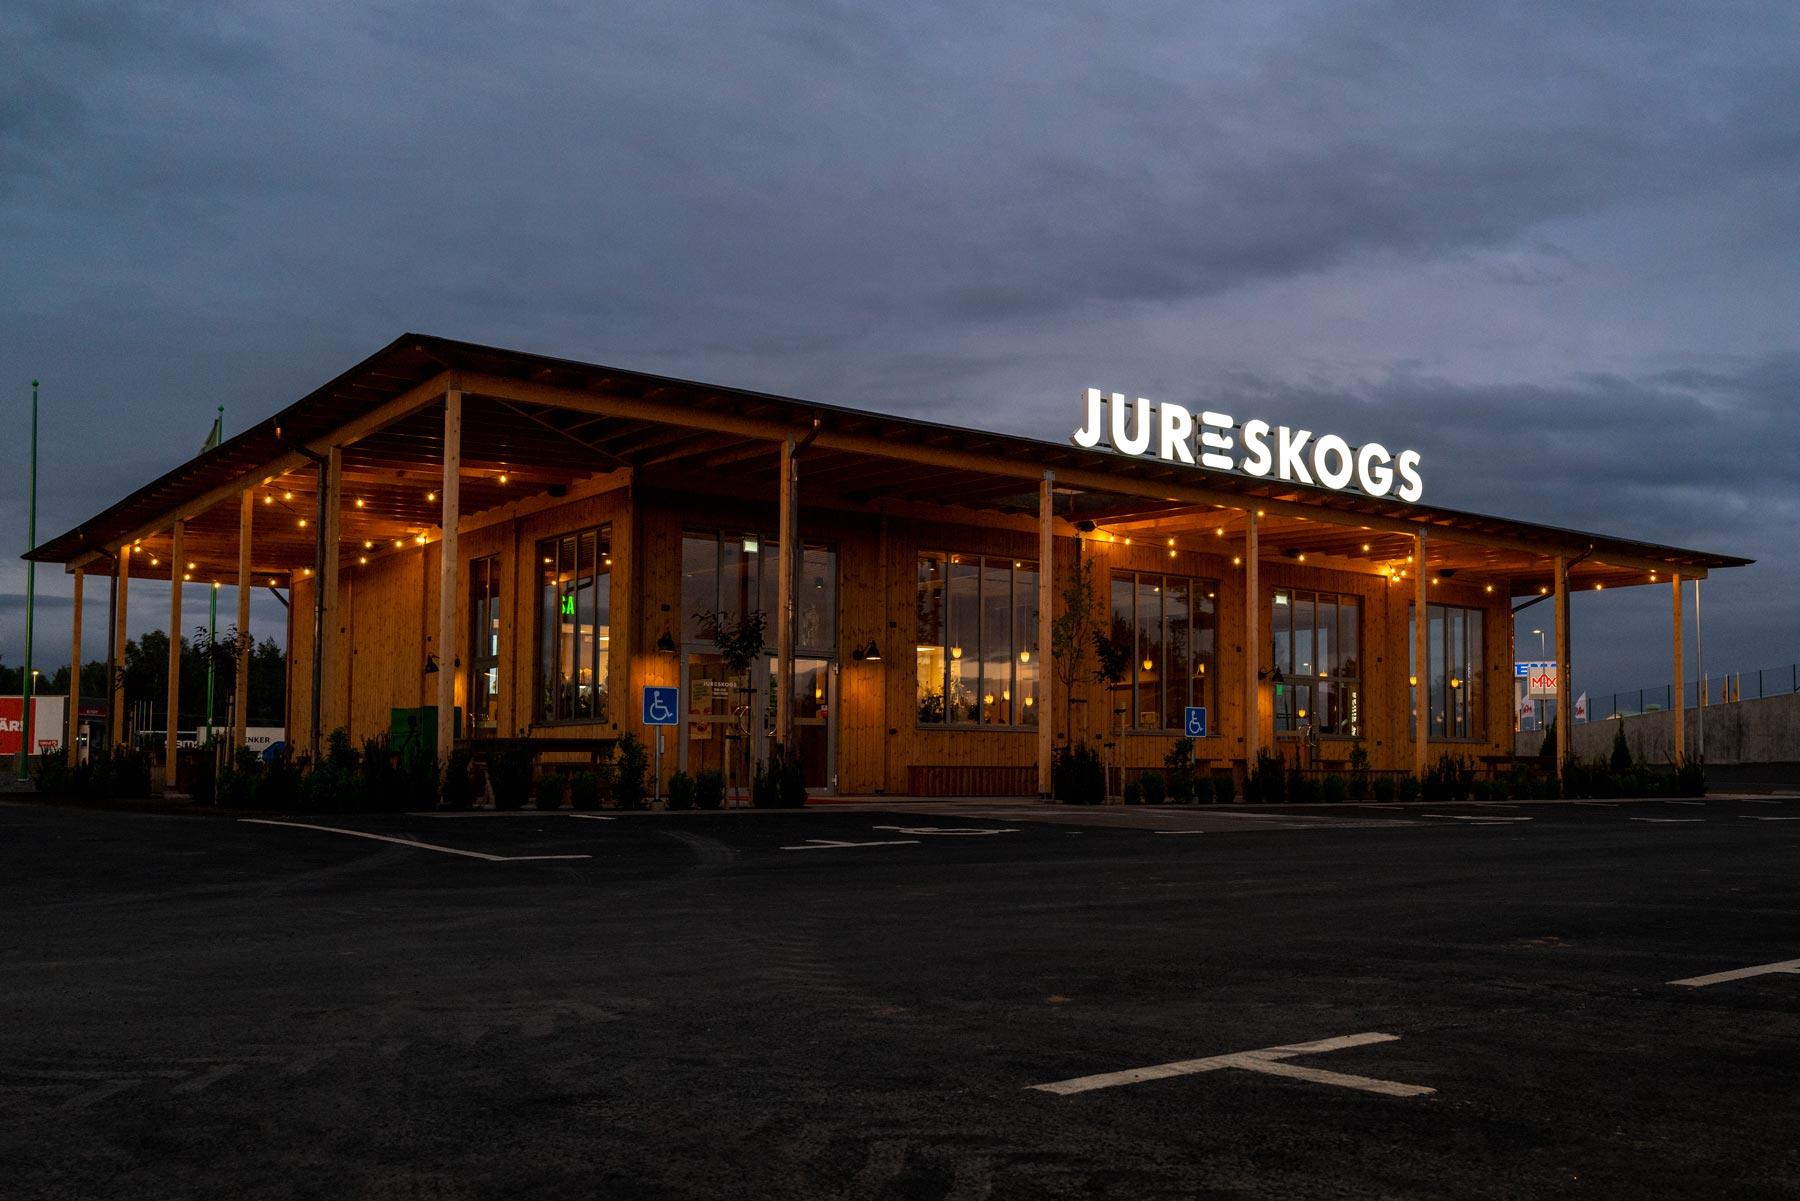 Jureskogs restaurang i Värnamo